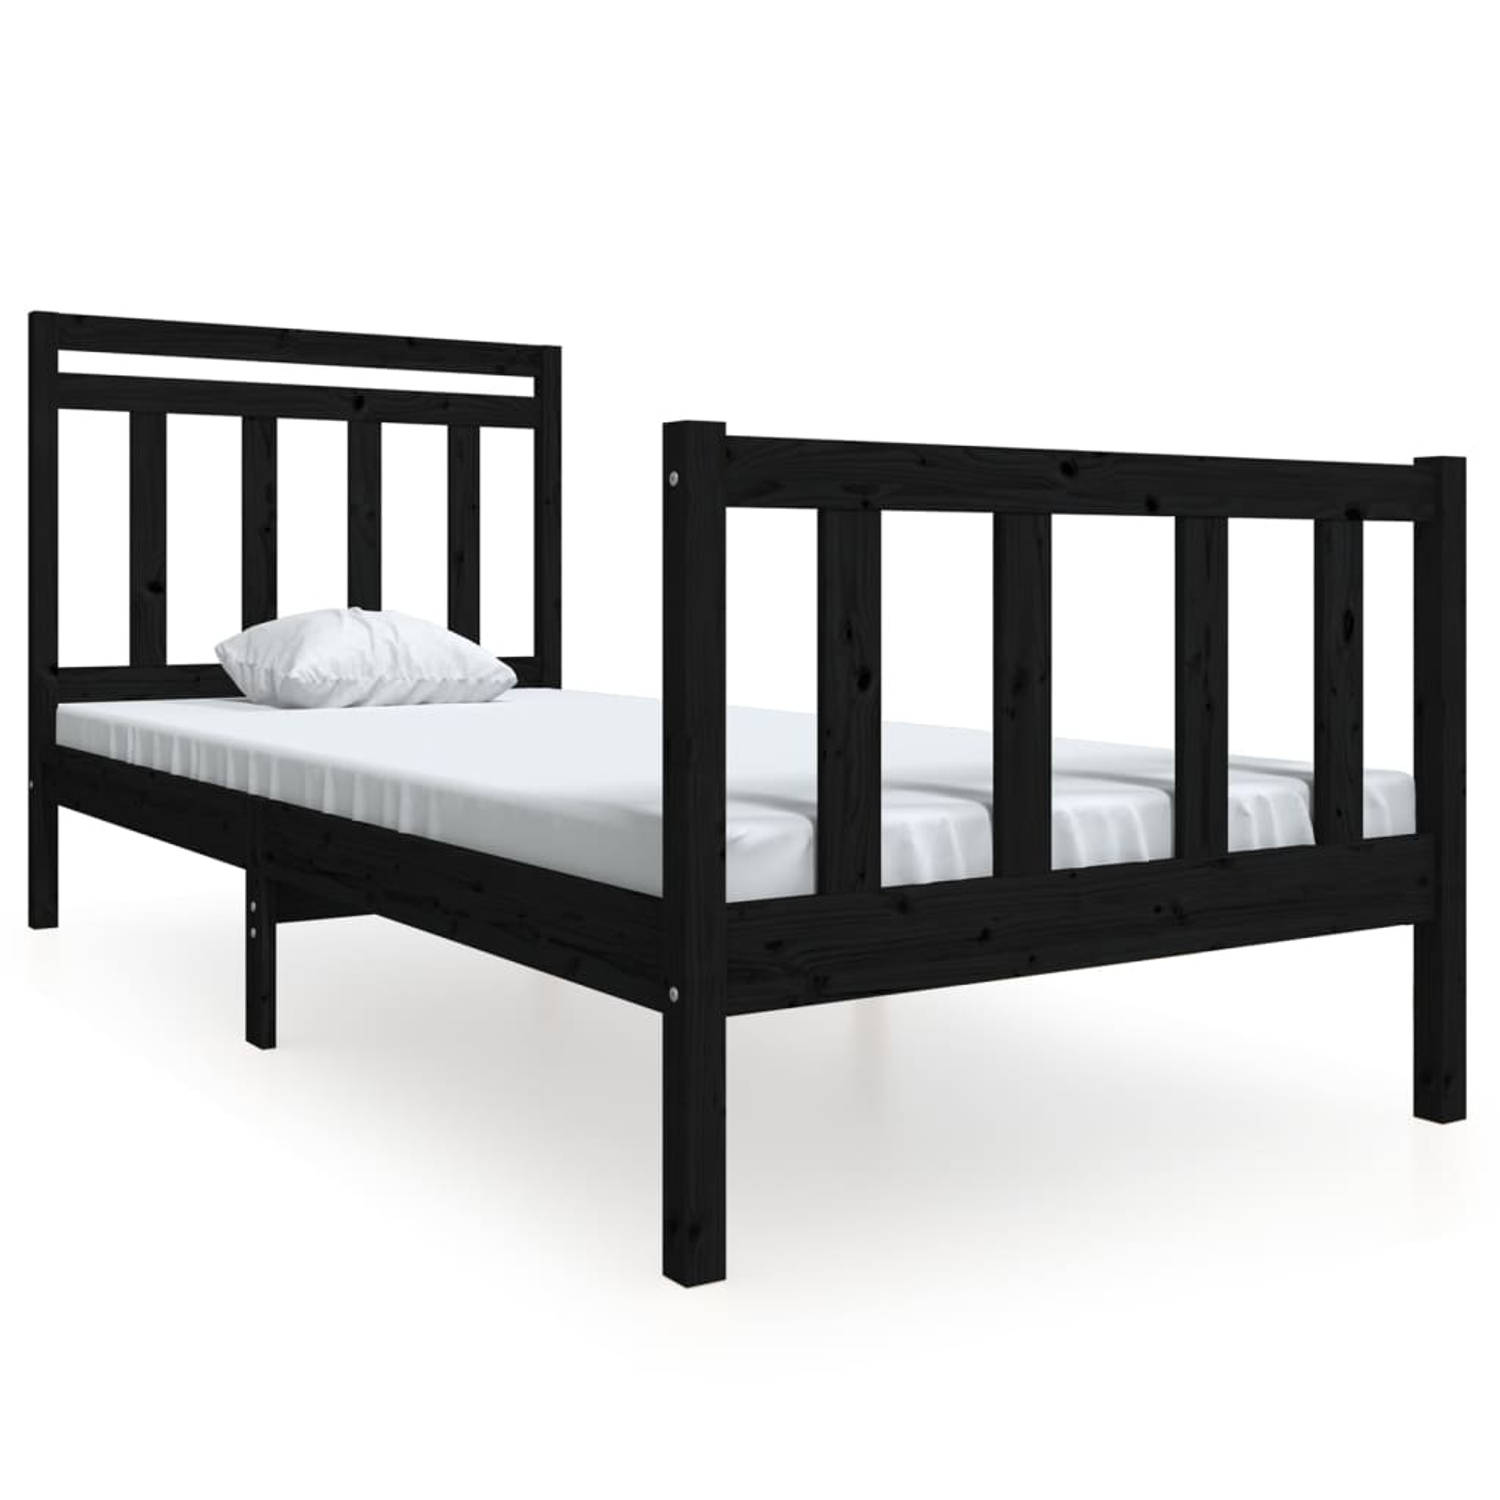 The Living Store Bedframe massief hout zwart 90x190 cm 3FT6 Single - Bedframe - Bedframes - Eenpersoonsbed - Bed - Bedombouw - Frame - Bed Frame - Ledikant - Bedframe Met Hoofdeind